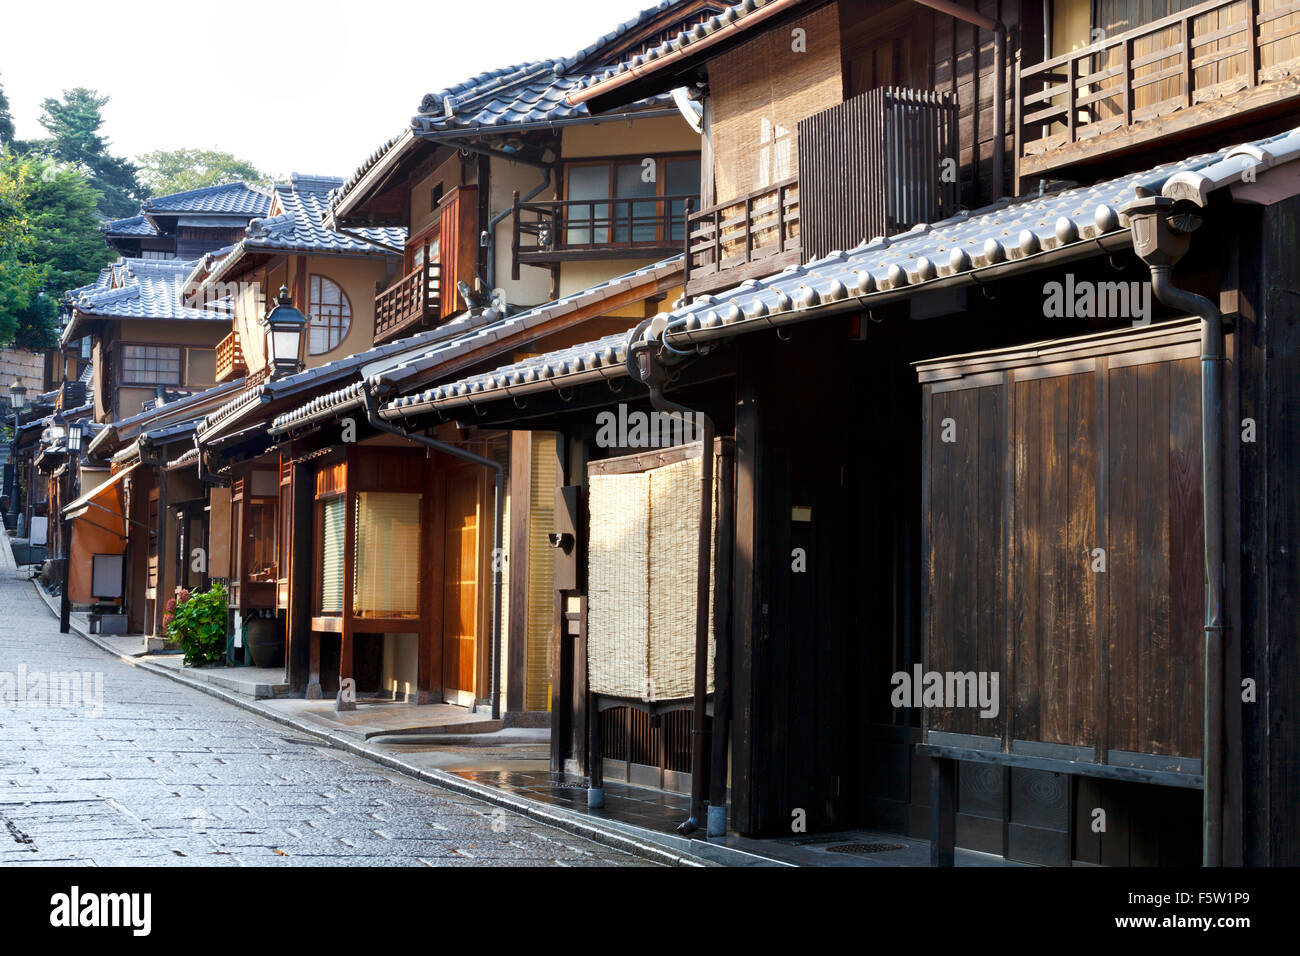 Strada di vecchie case in legno nella storica città di Kyoto in Giappone Foto Stock